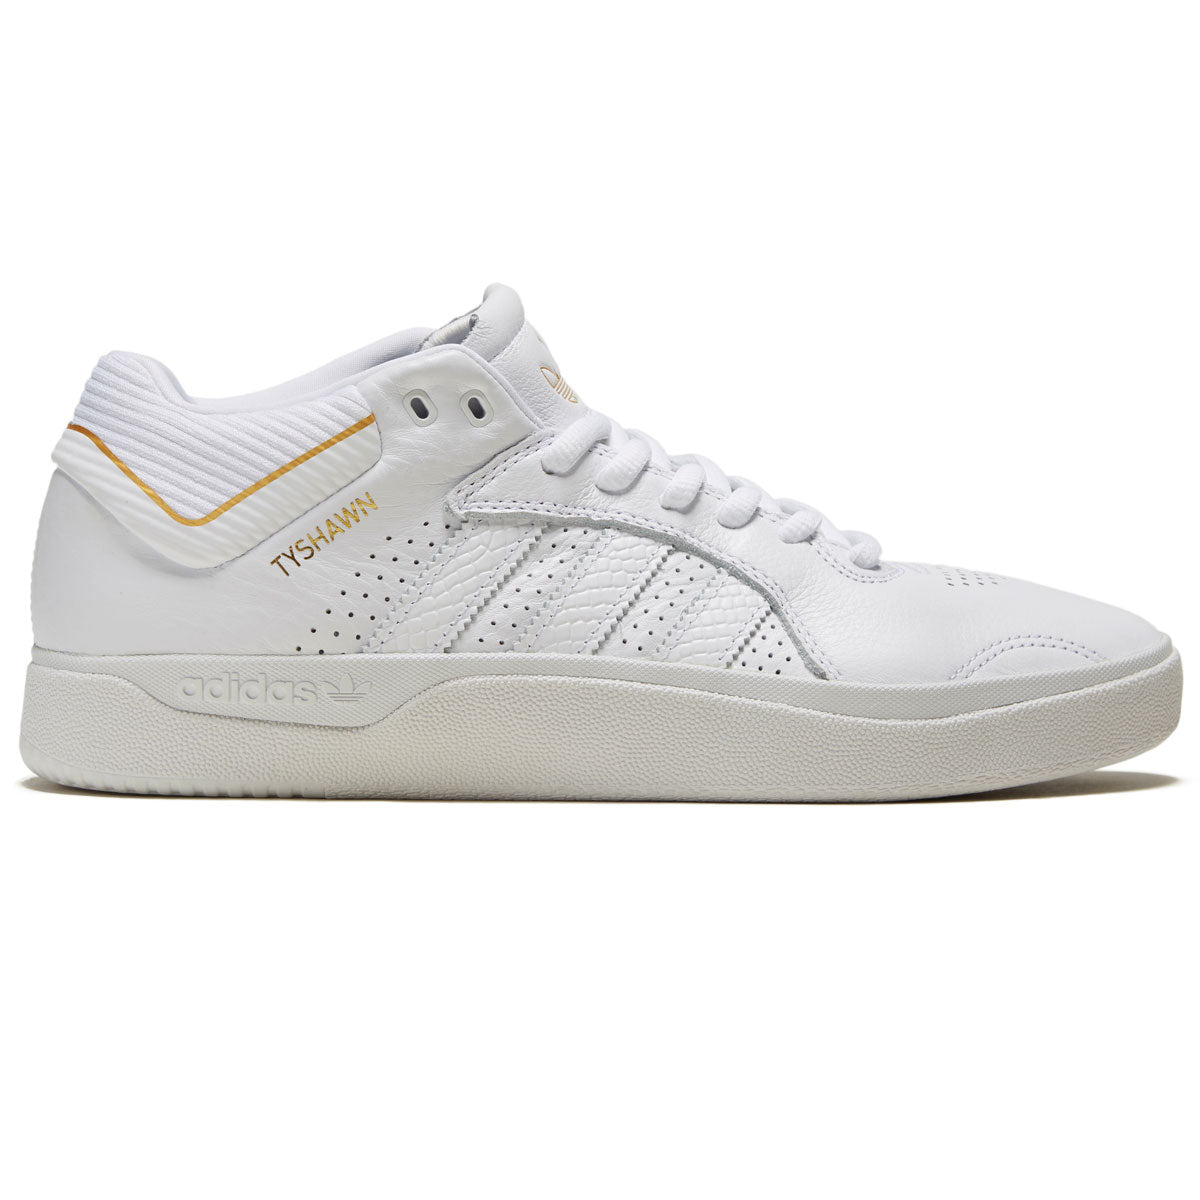 Adidas Tyshawn Shoes - White/White/Gold Metallic image 1